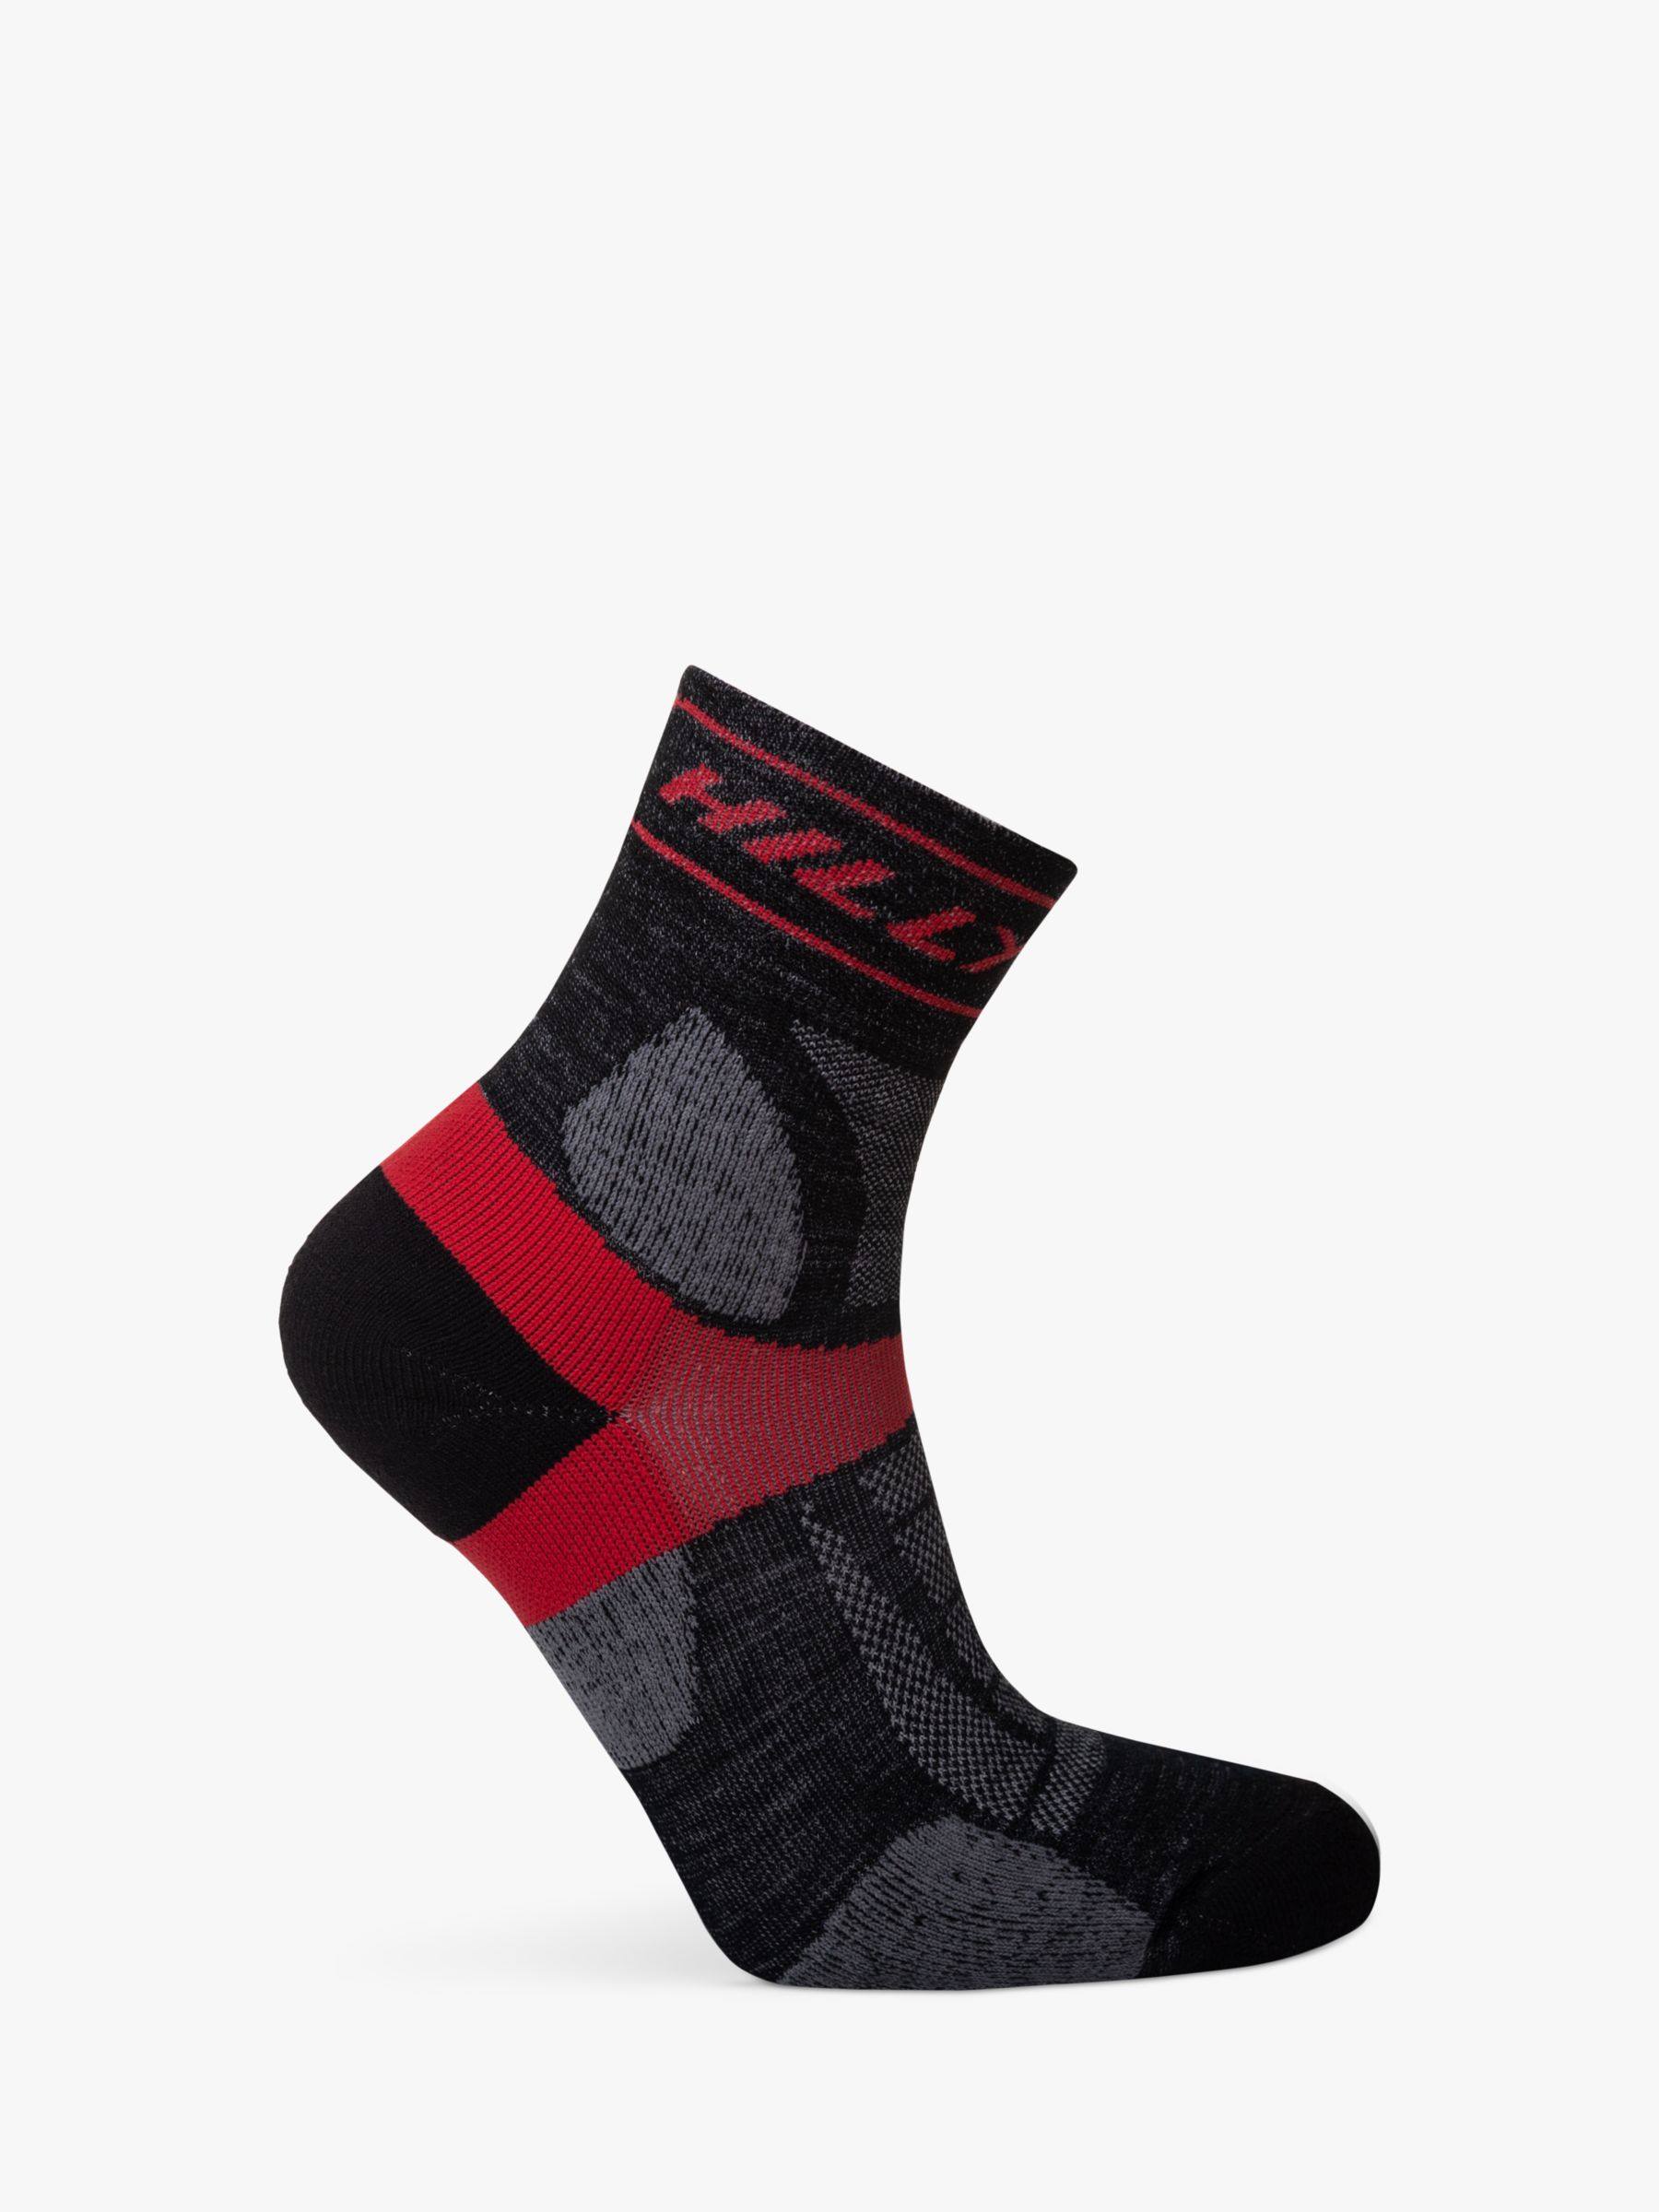 Hilly Trail Anklet Med Running Socks, Black/Red, S